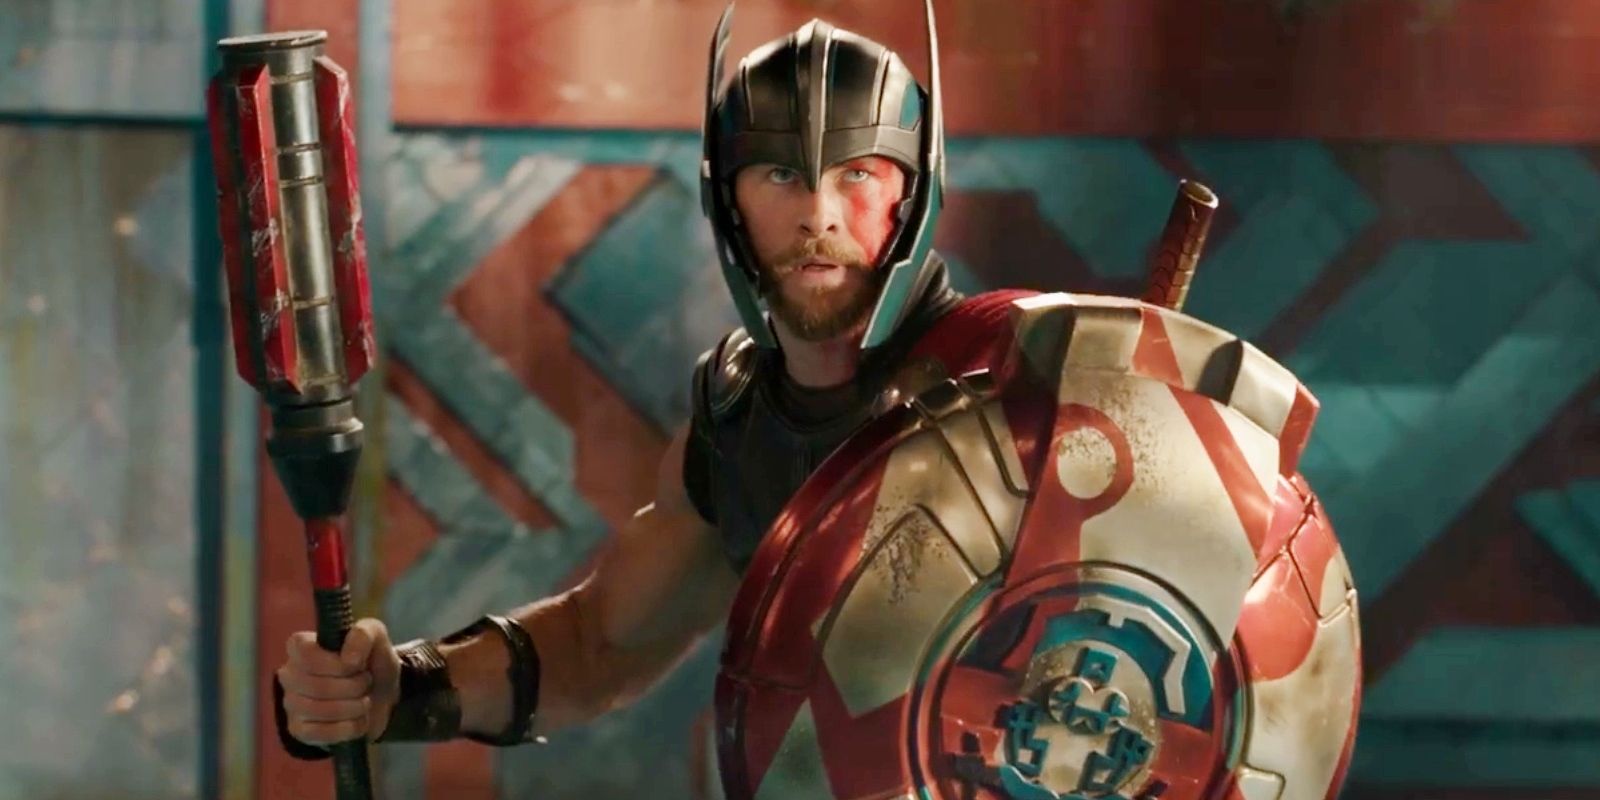 Thor: Ragnarok' commands $122M